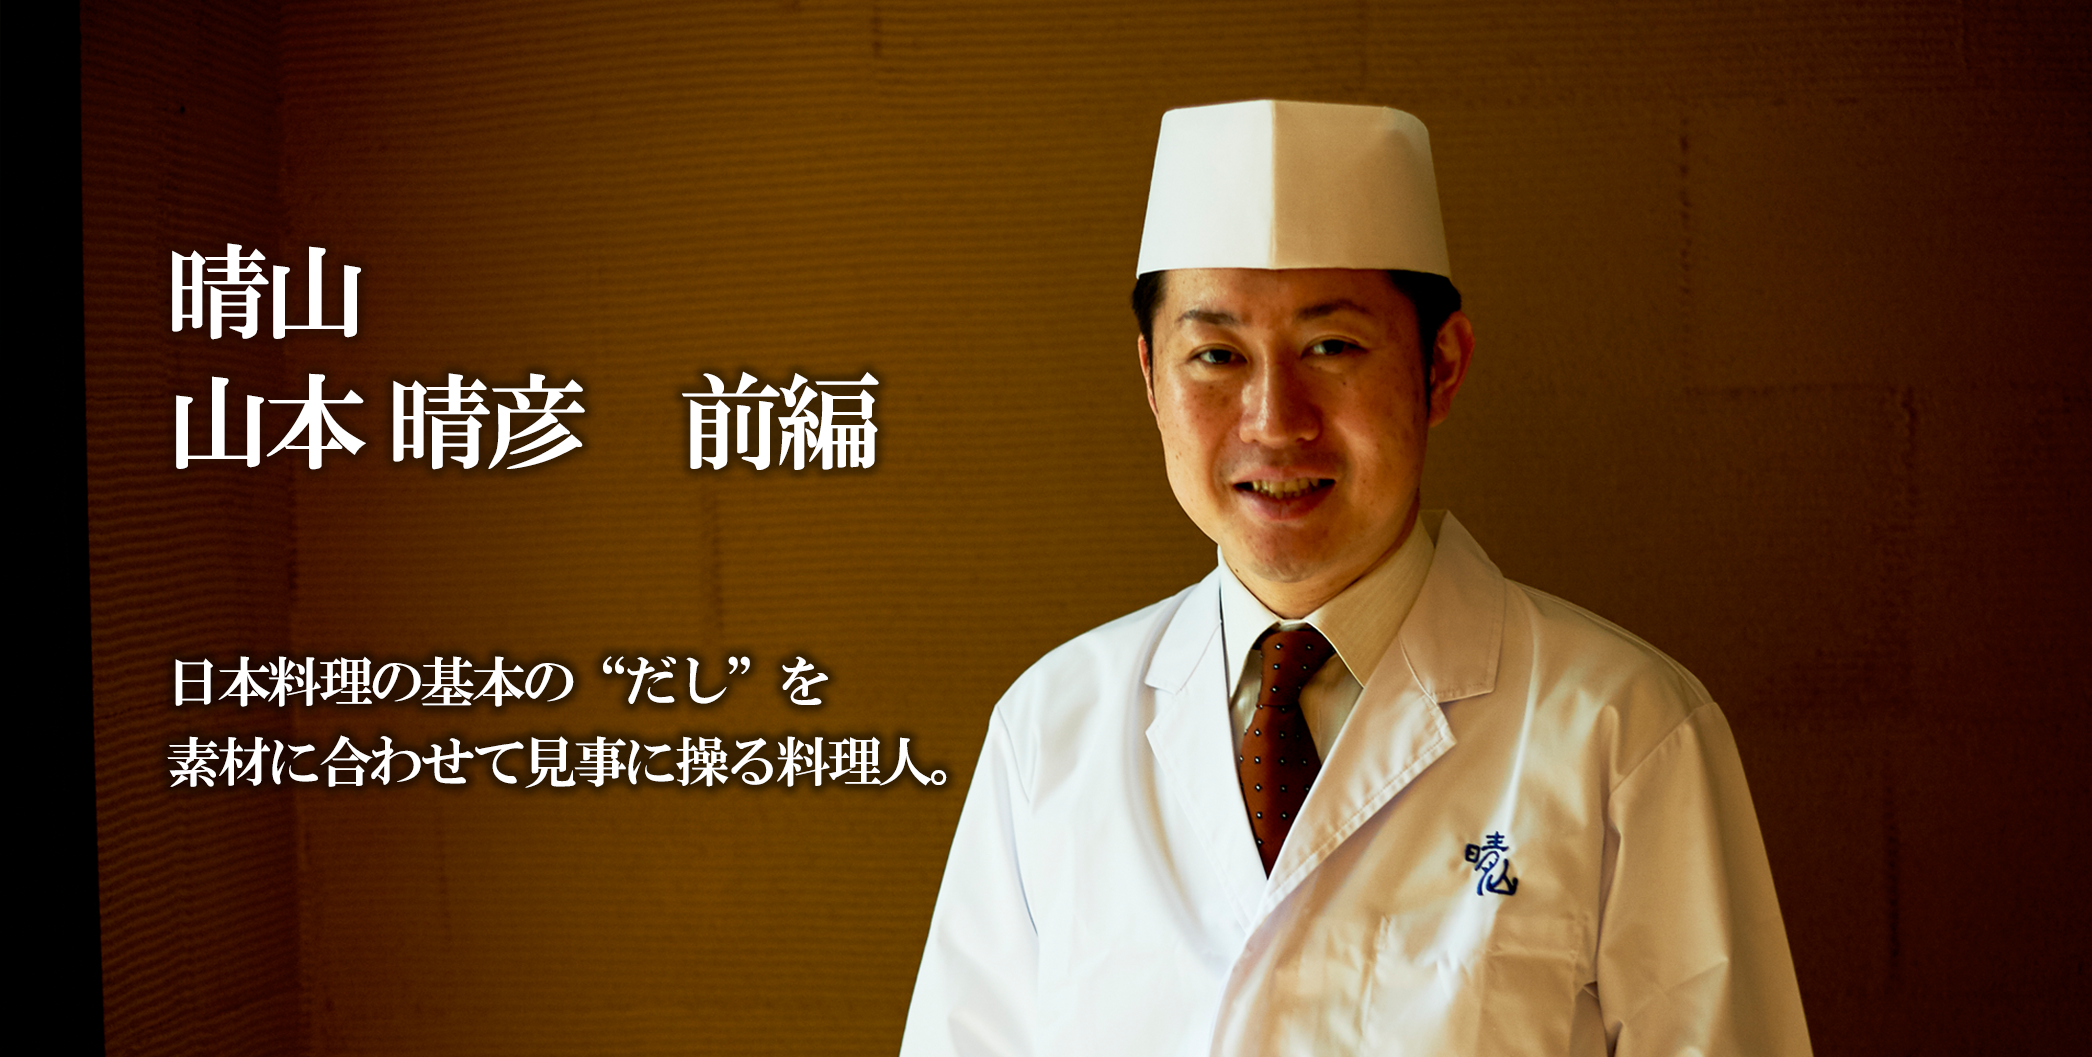 仕江府 九一三 TESTSHOP 日本料理の基本の“だし”を 素材に合わせて見事に操る料理人。